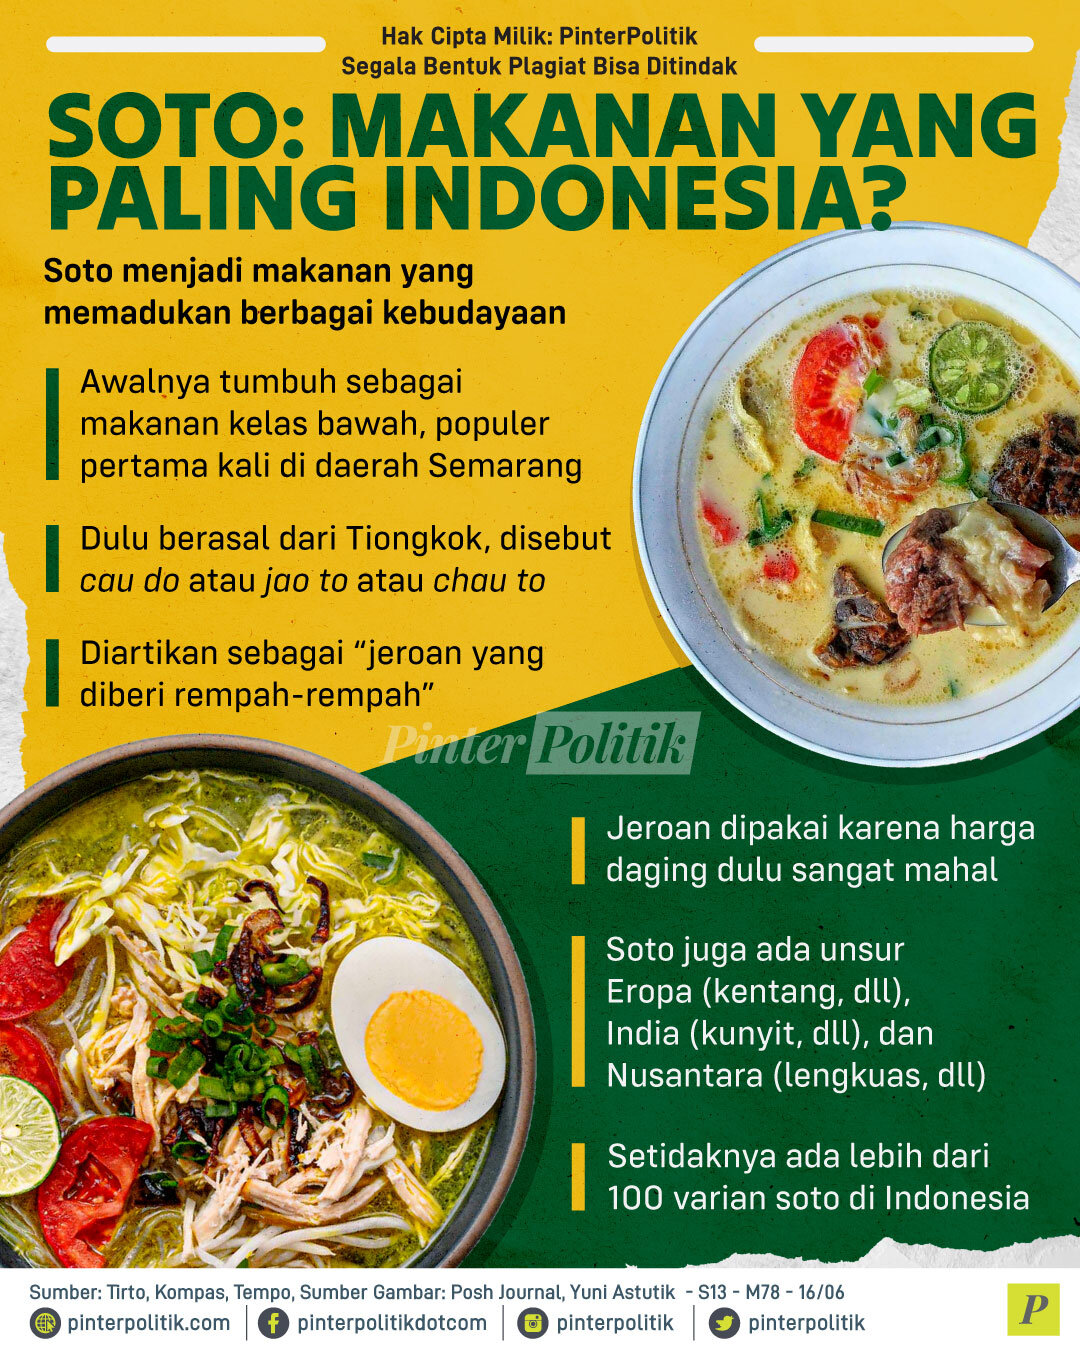 soto makanan yang paling indonesia